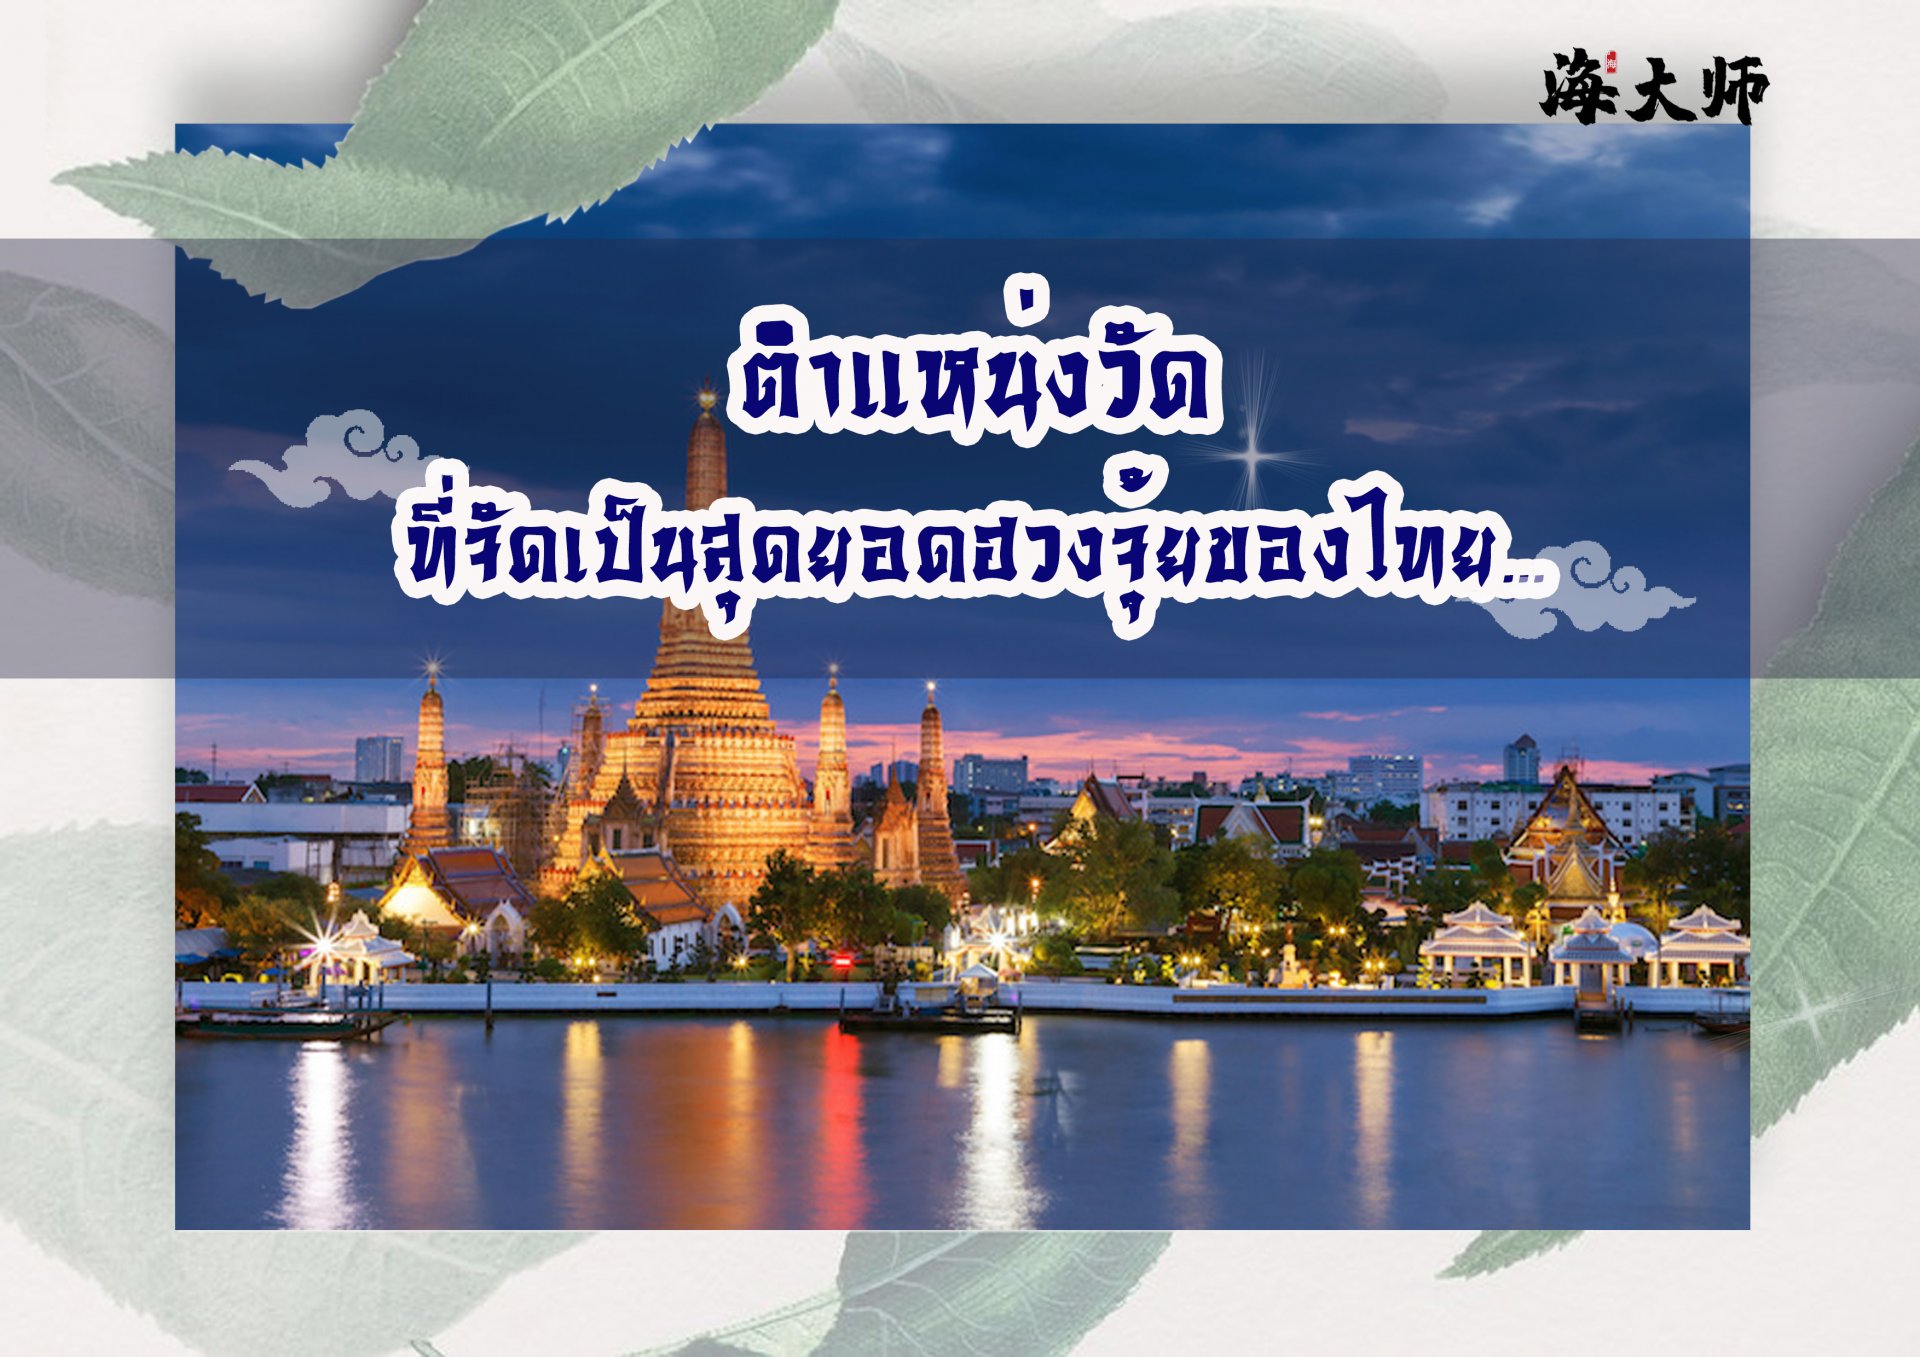 ตำแหน่งวัดที่ถือว่าเป็นสุดยอดฮวงจุ้ยของไทยตั้งอยู่ที่ไหนบ้าง